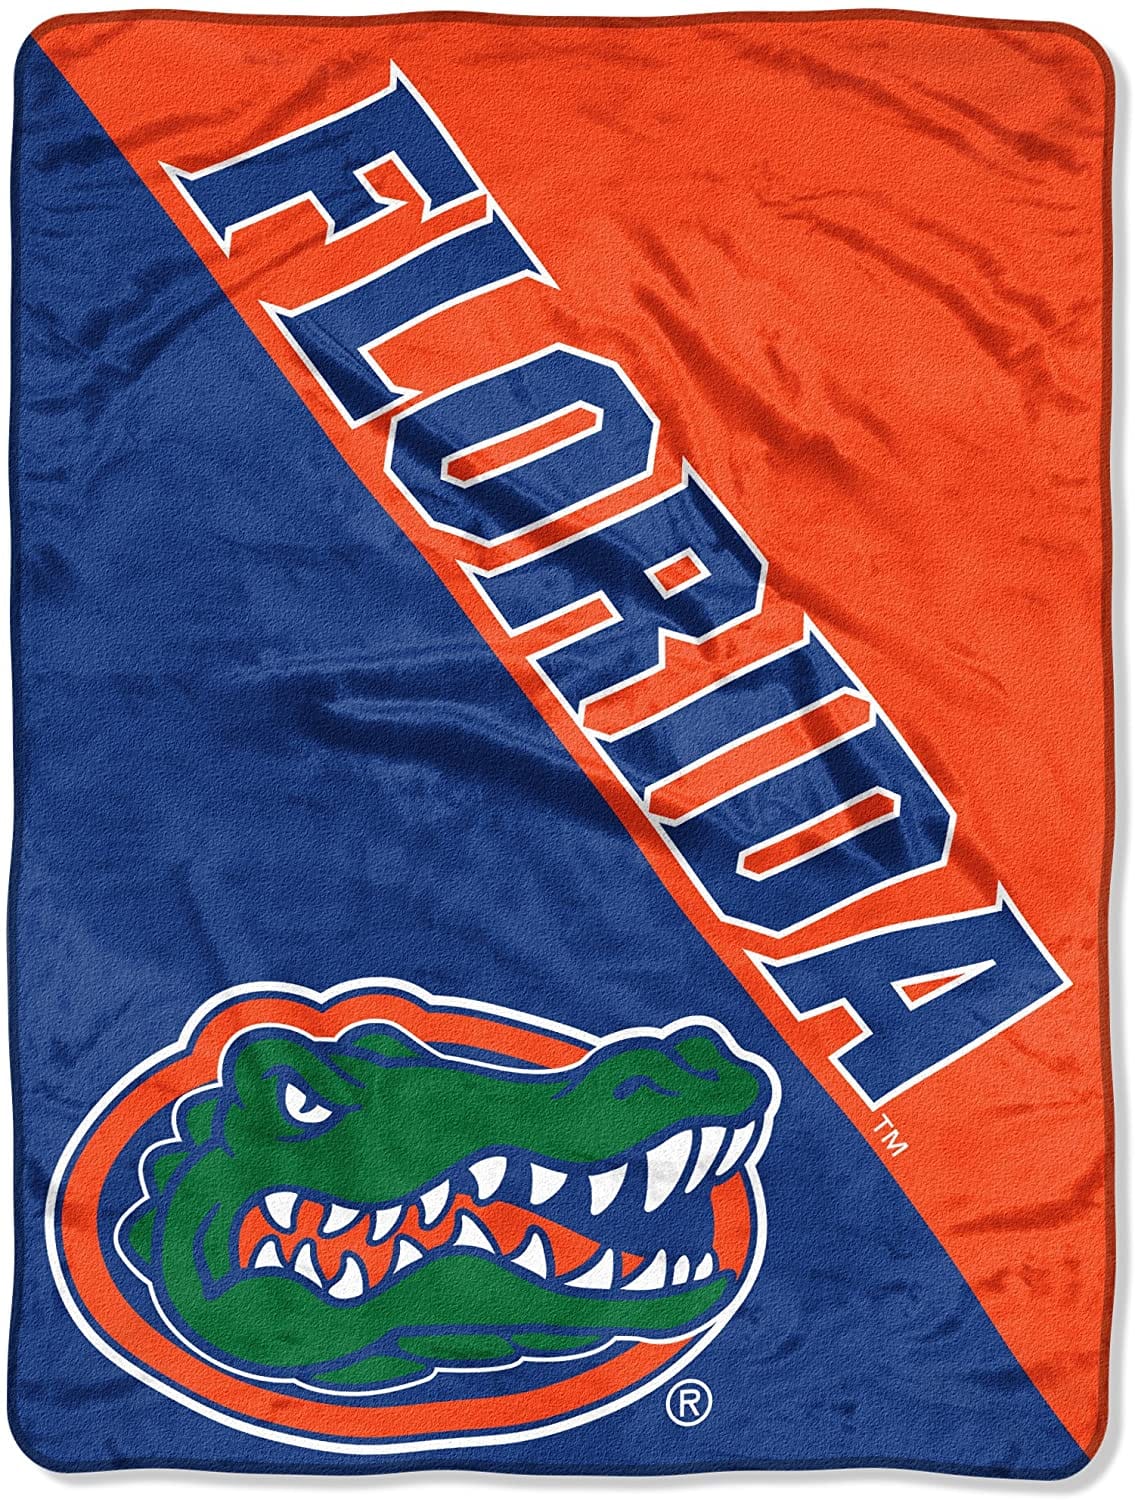 Ncaa Florida Gators Fleece Blanket